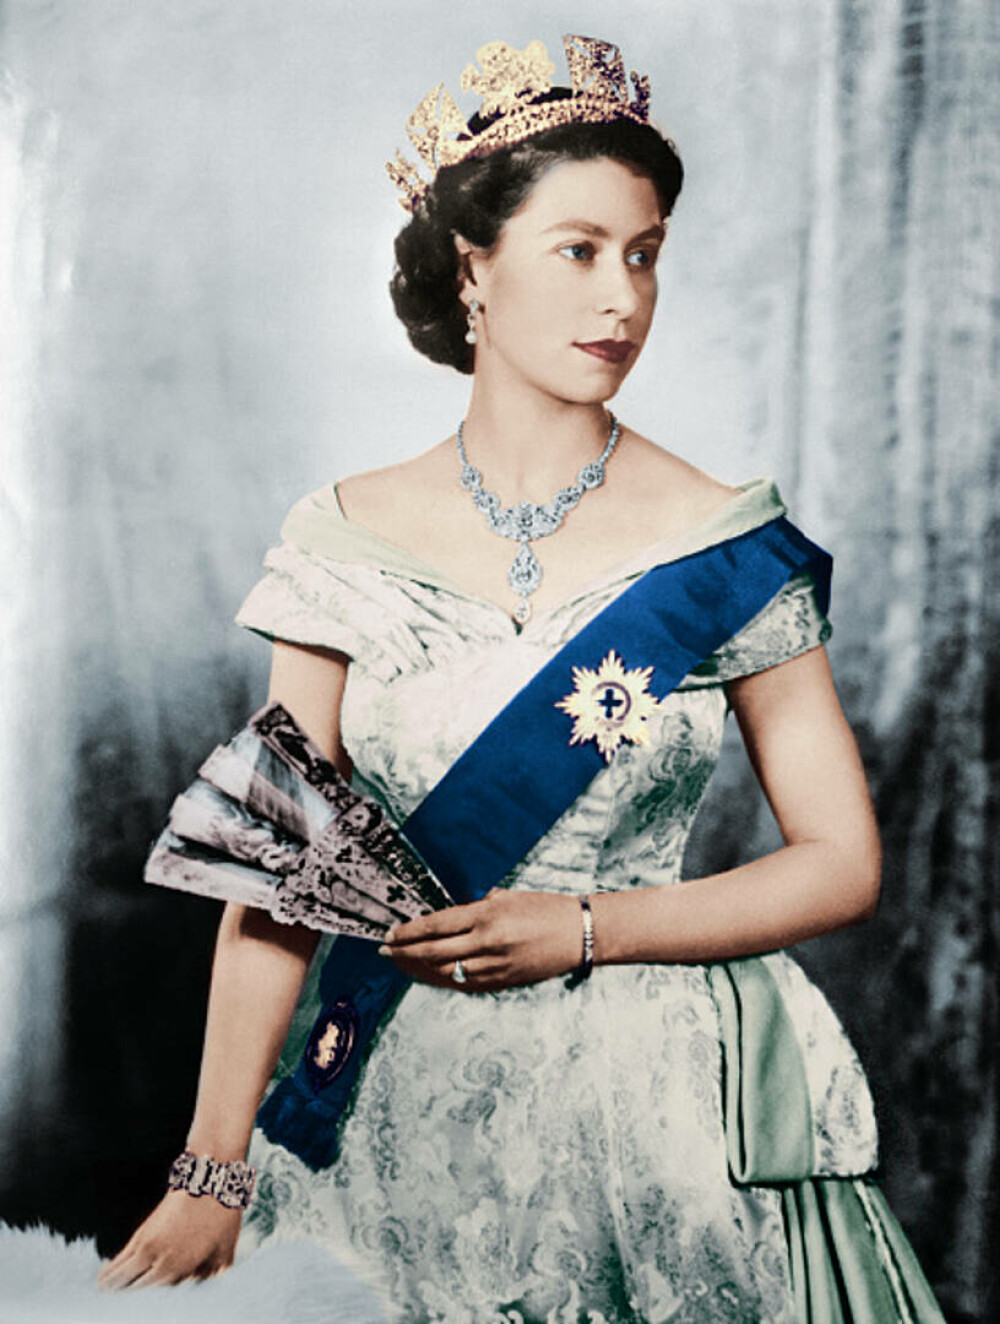 Viața Reginei Elisabeta în imagini. În cei peste 70 de ani de domnie, a devenit al doilea cel mai longeviv monarh din istorie - Imaginea 11